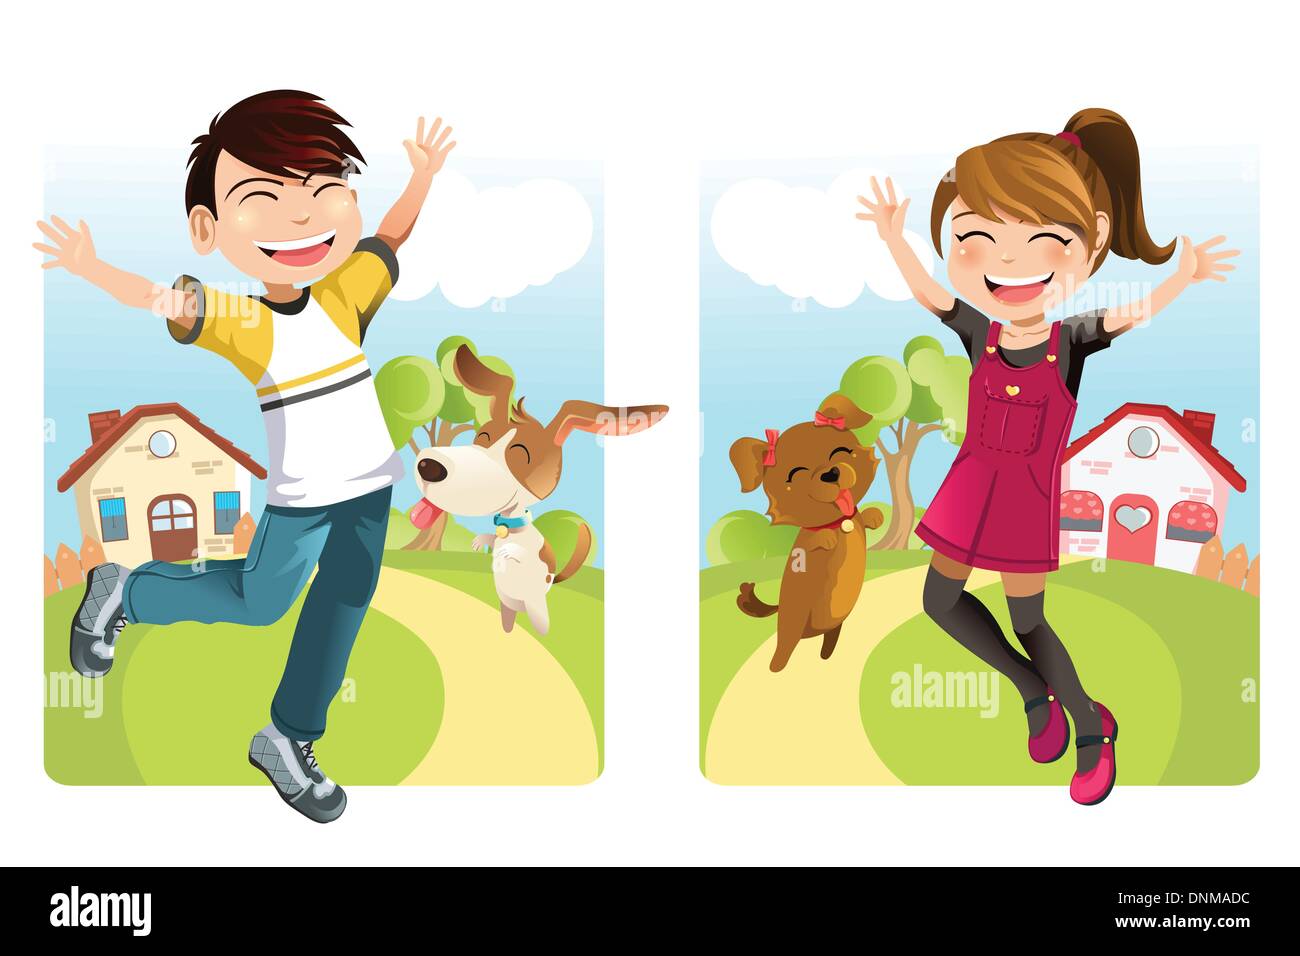 Eine Vektor-Illustration eines jungen und ein Mädchen mit einem Hund Stock Vektor